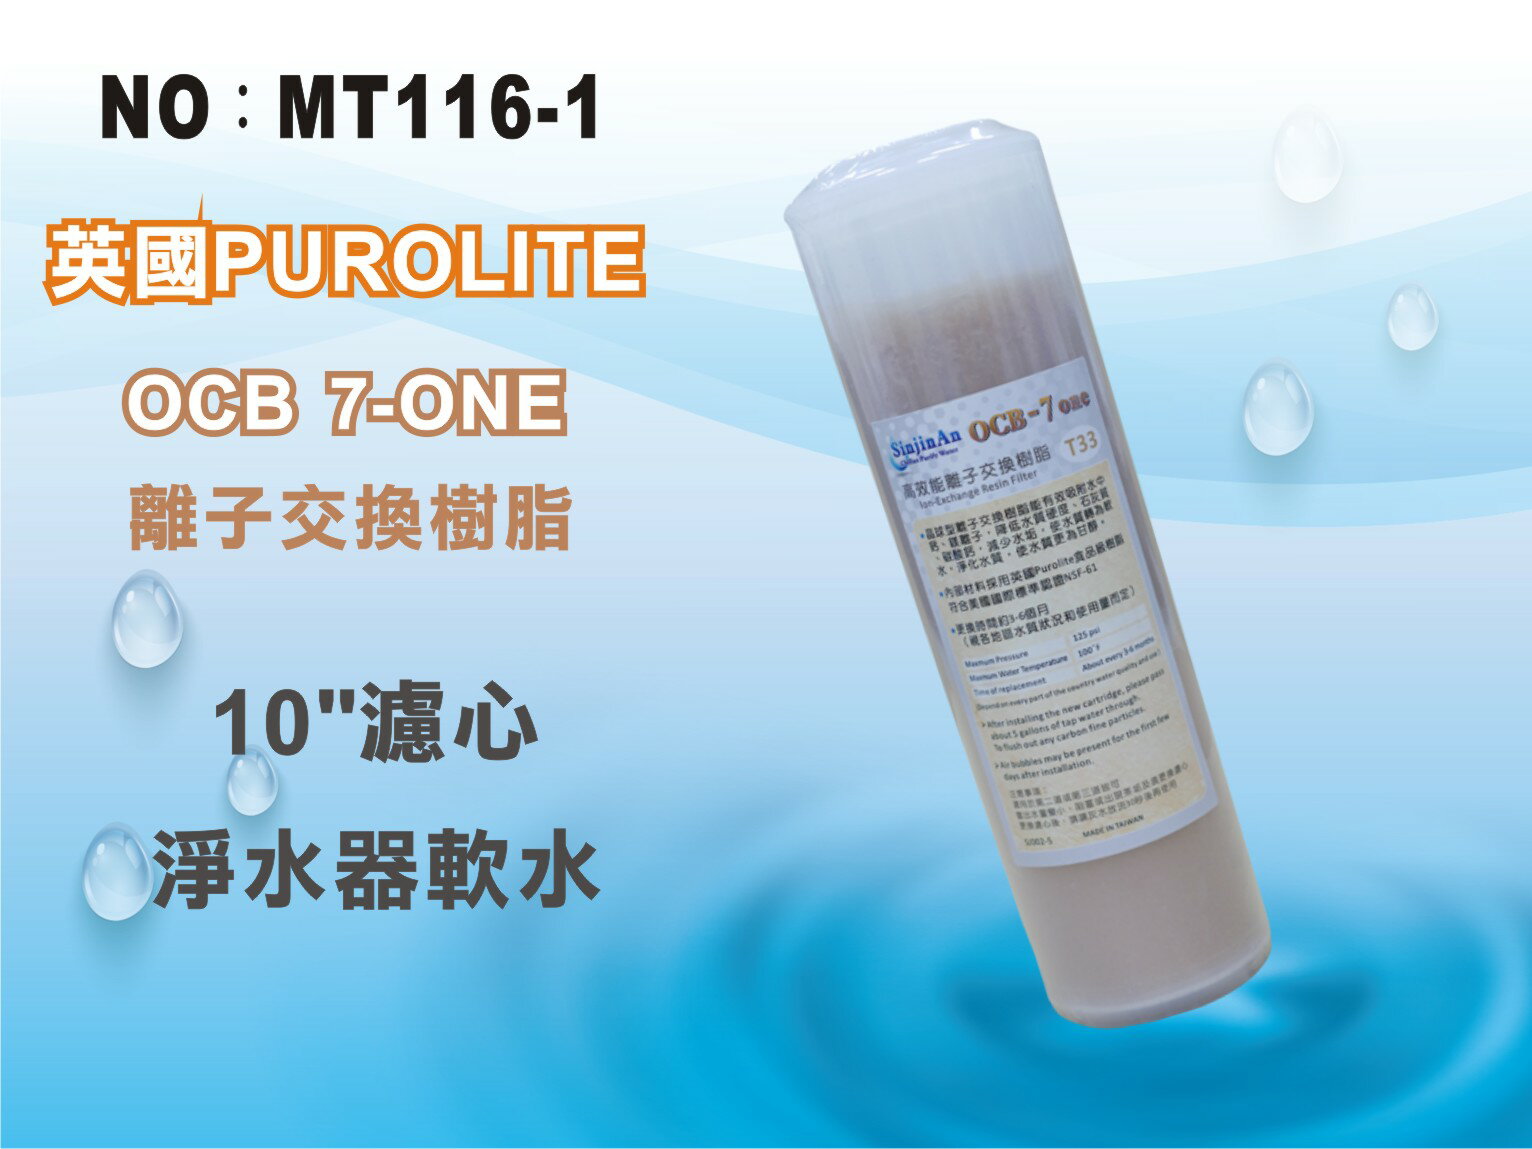 【龍門淨水】10吋OCB 7-ONE英國Purolite食品級離子交換樹脂濾心 25支 淨水器(MT116-1)